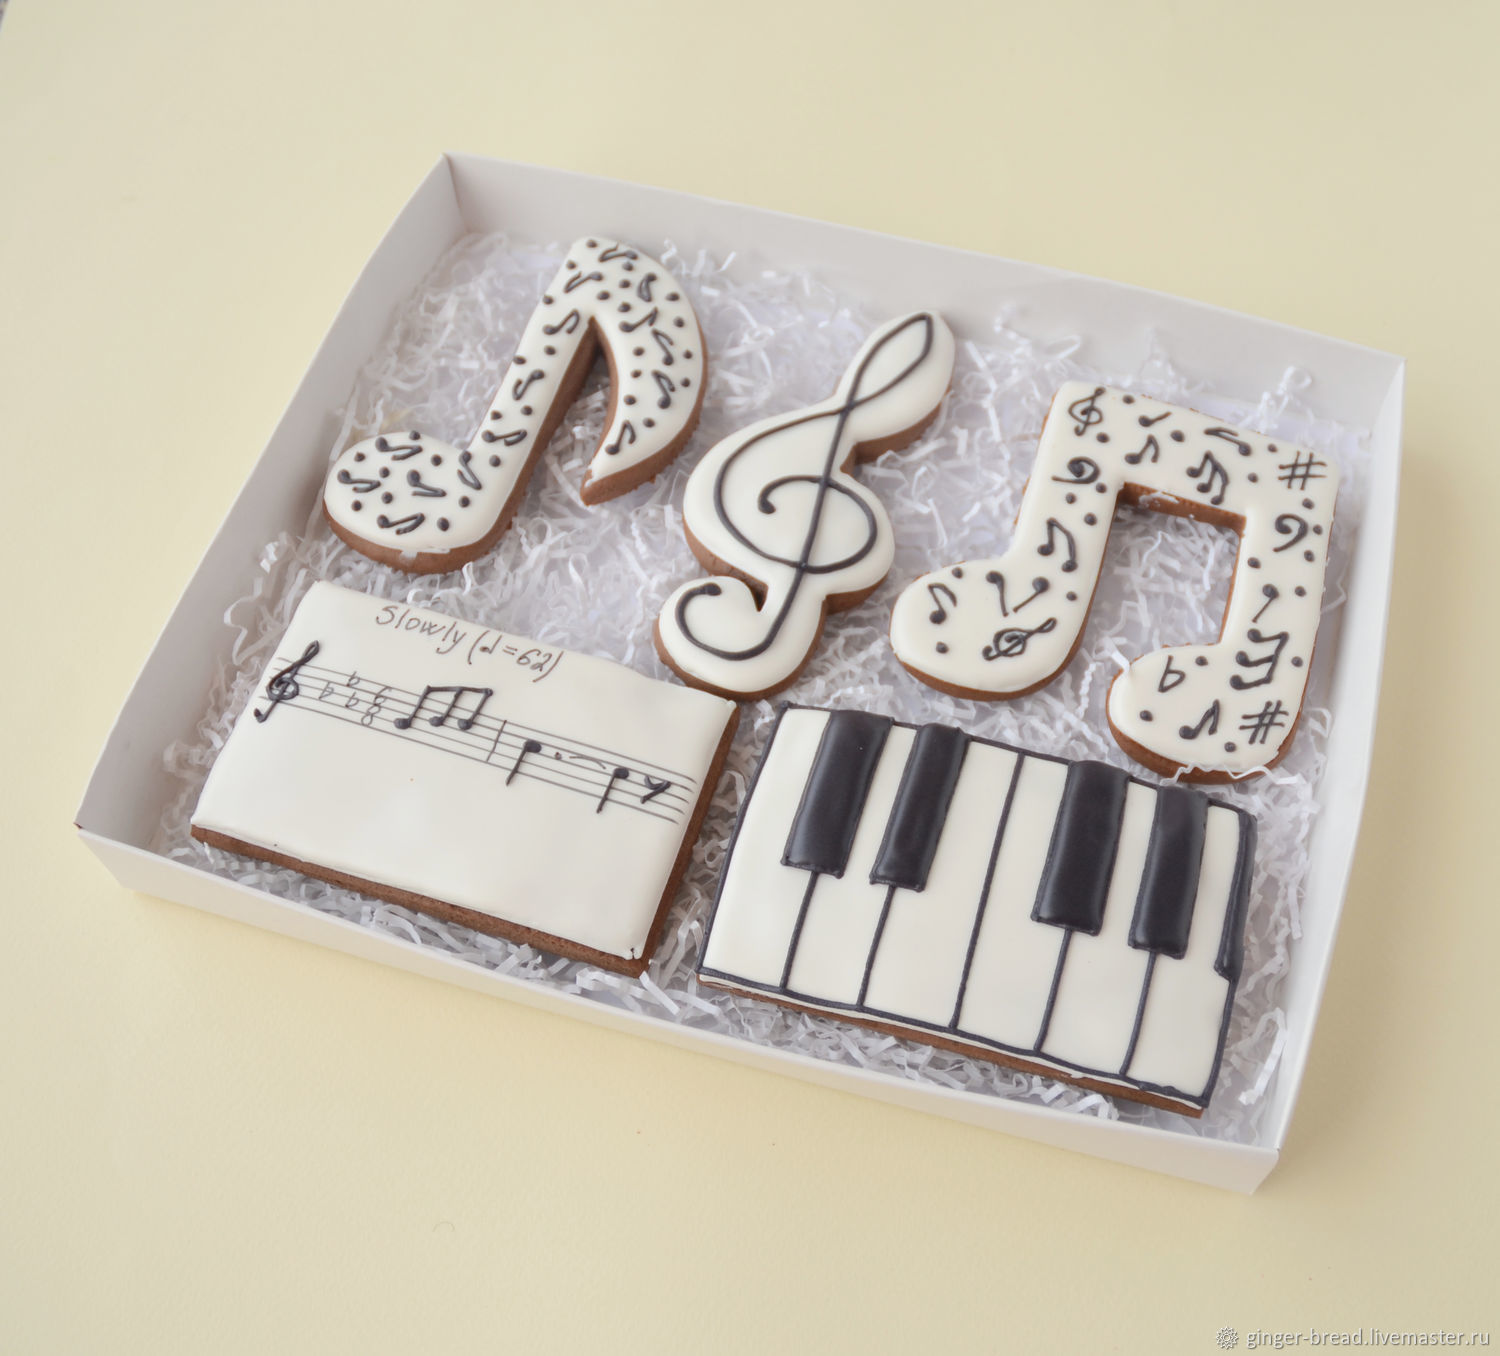 Подарки музыкантам на дни рождения: оригинальные сувениры, торты. – Виртуозы